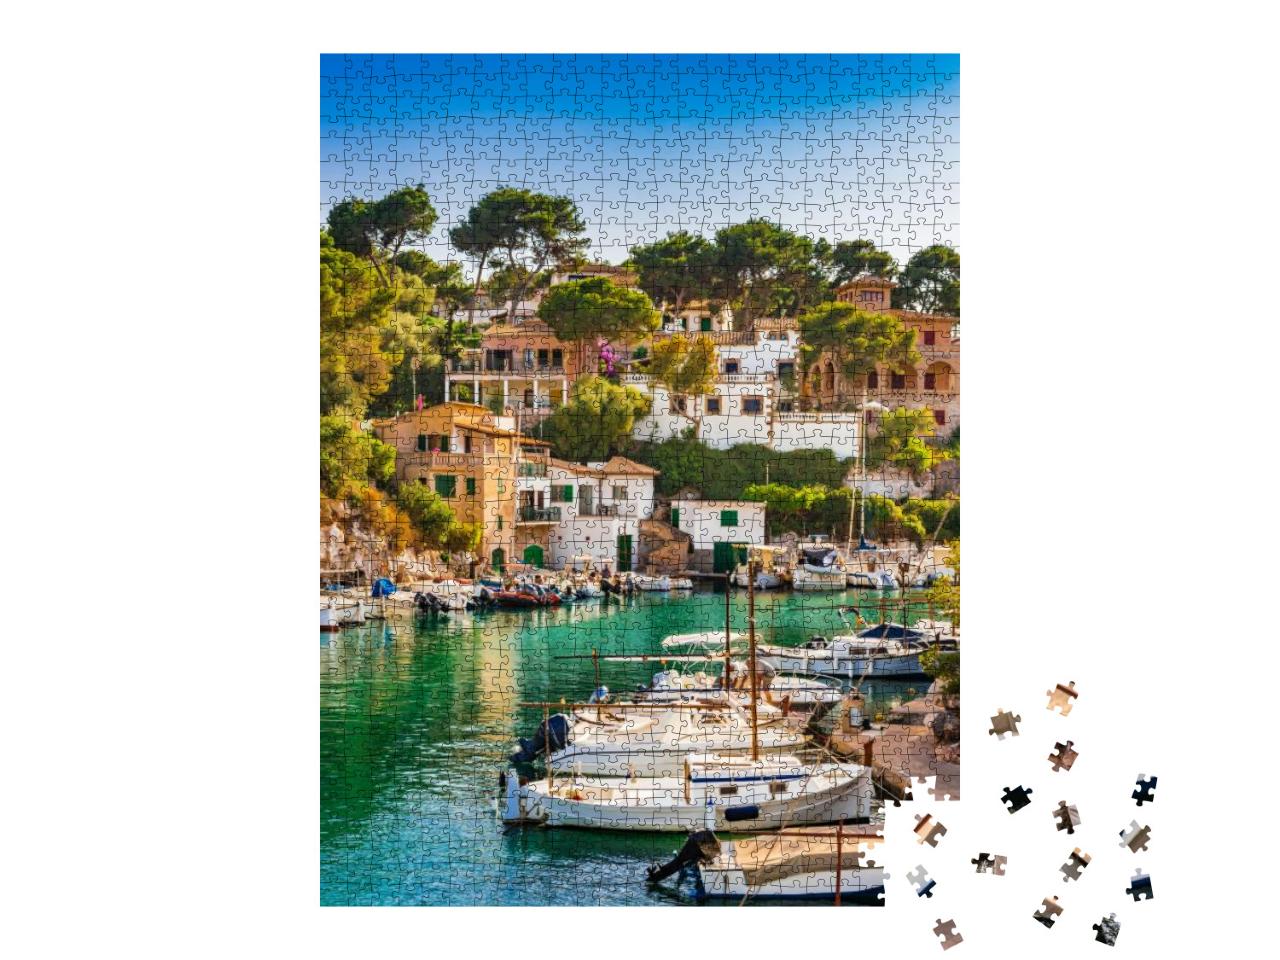 Puzzle 1000 Teile „Malerische Bucht Cala Figuera auf Mallorca“